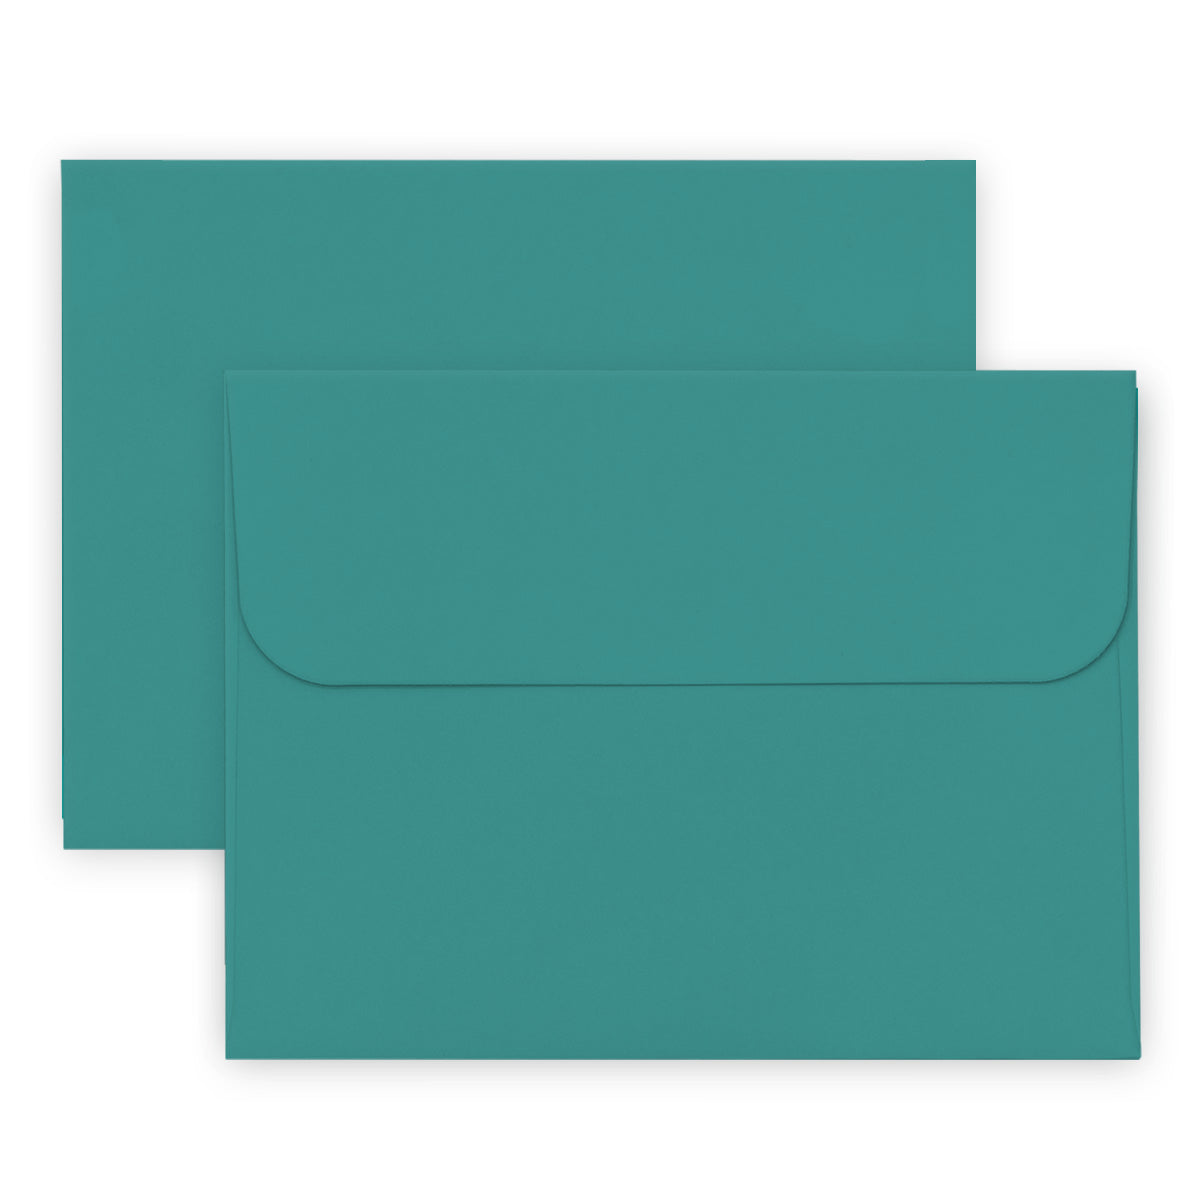 Envelope Bundle Crafty Necessities: Sea Shore Envelope